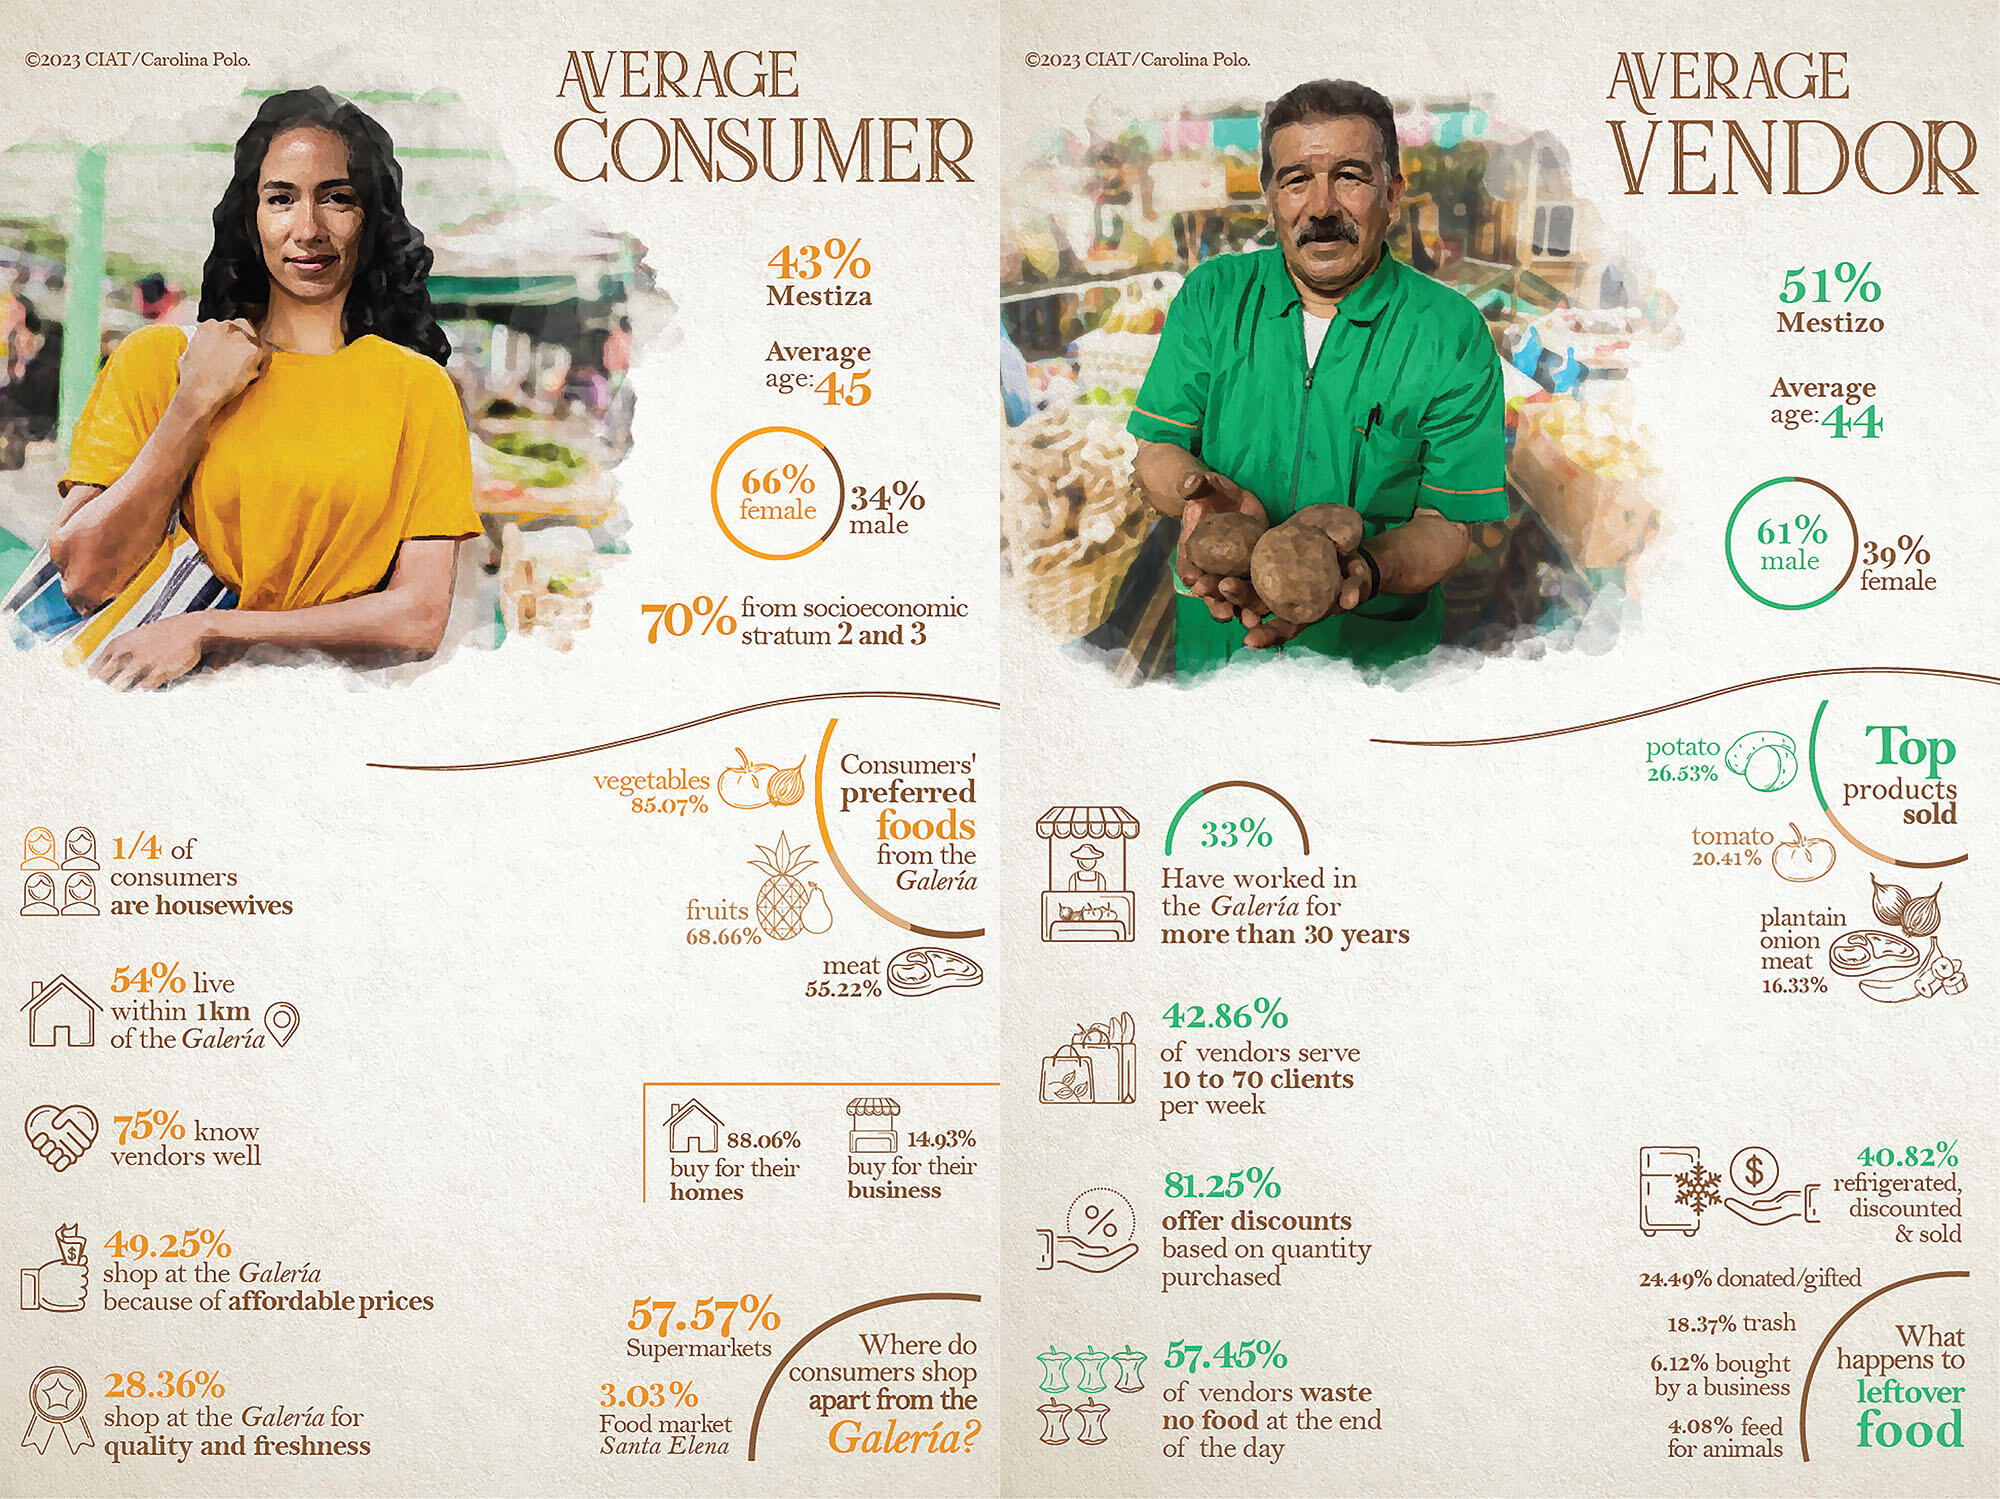 Characteristics of the average consumer and vendor at the Galería El Porvenir. (Images © CIAT/Carolina Polo.)